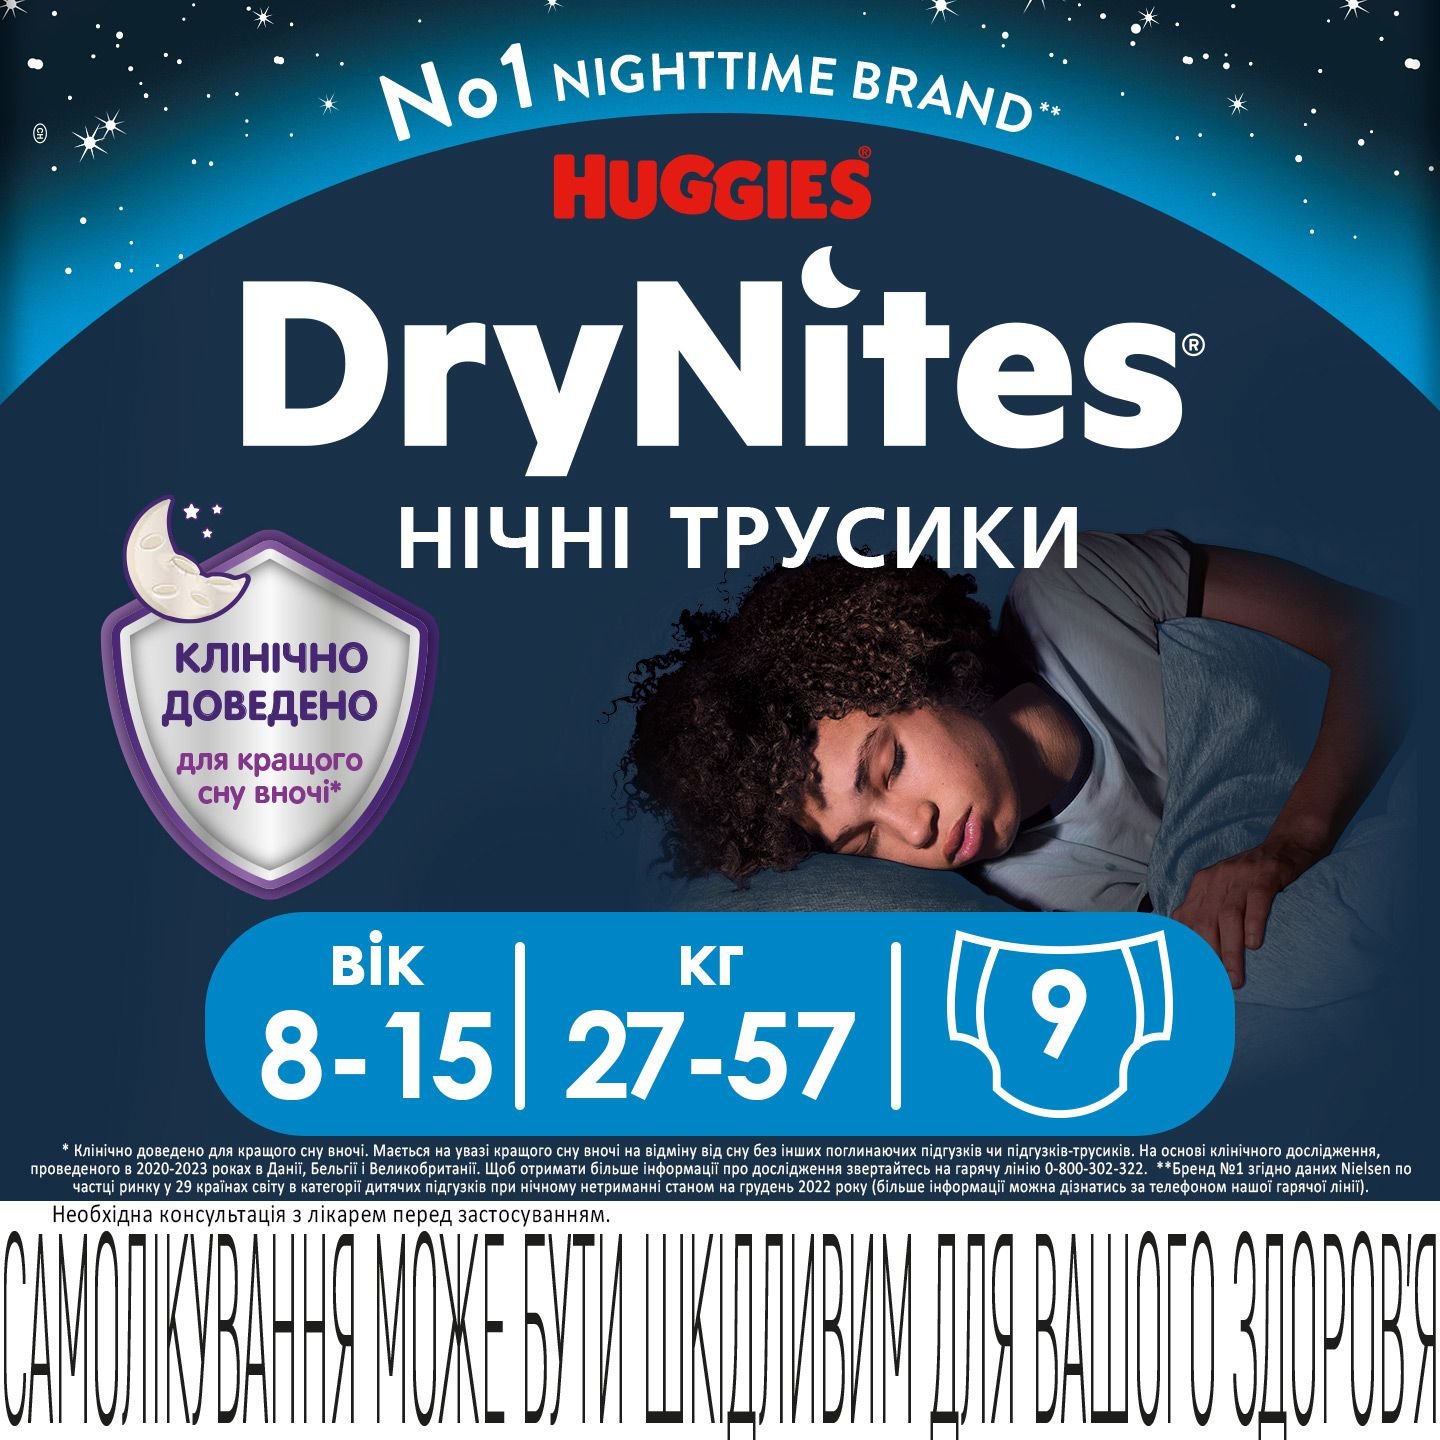 Підгузки-трусики для хлопчиків Huggies DryNites (27-57 кг), 9 шт. - фото 2